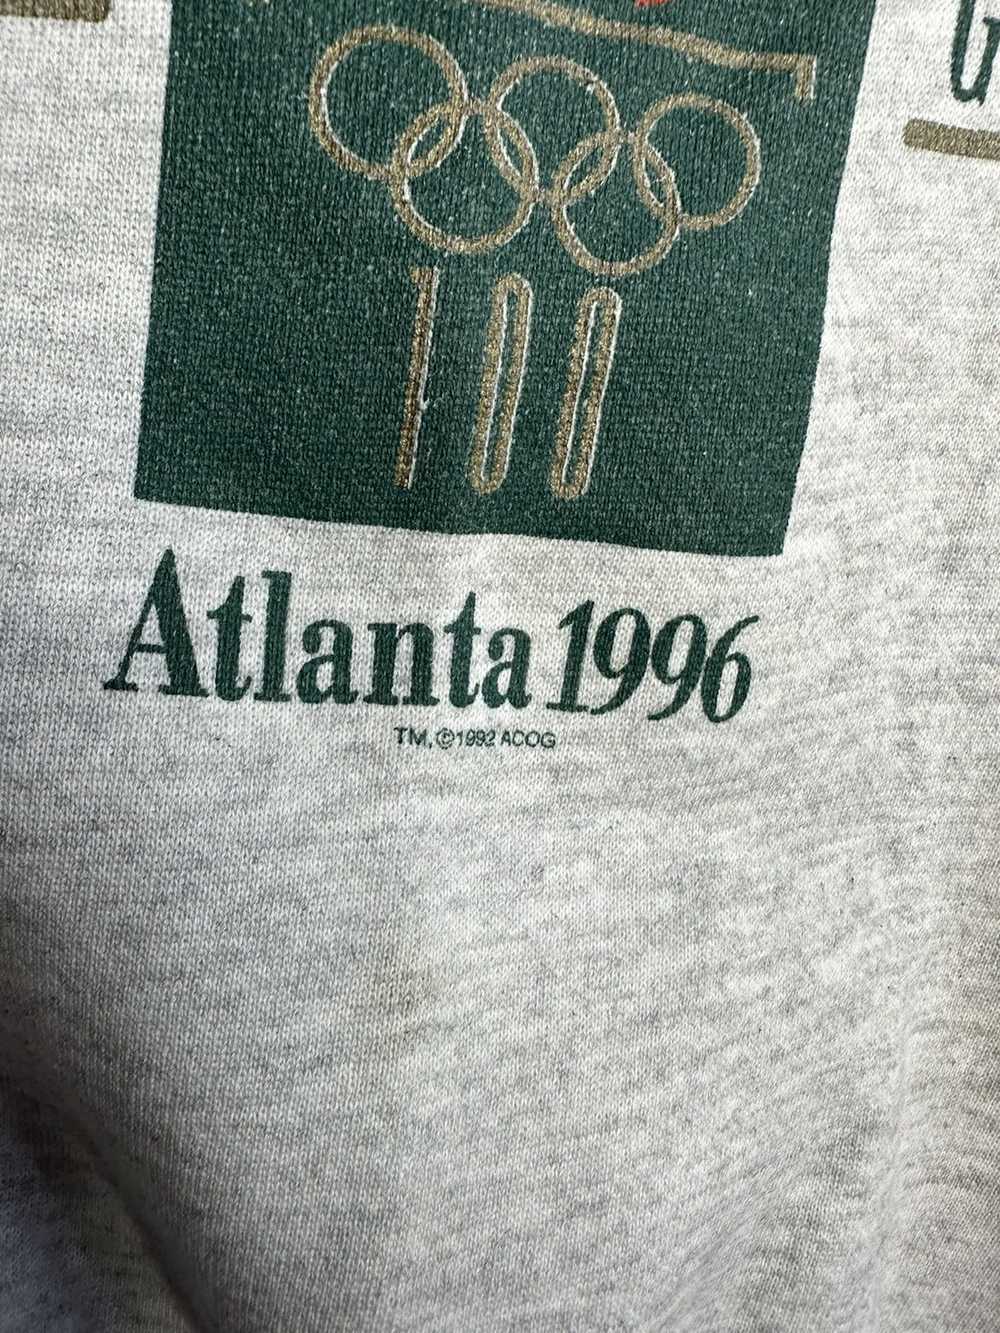 Streetwear × Usa Olympics × Vintage Vintage Atlan… - image 5